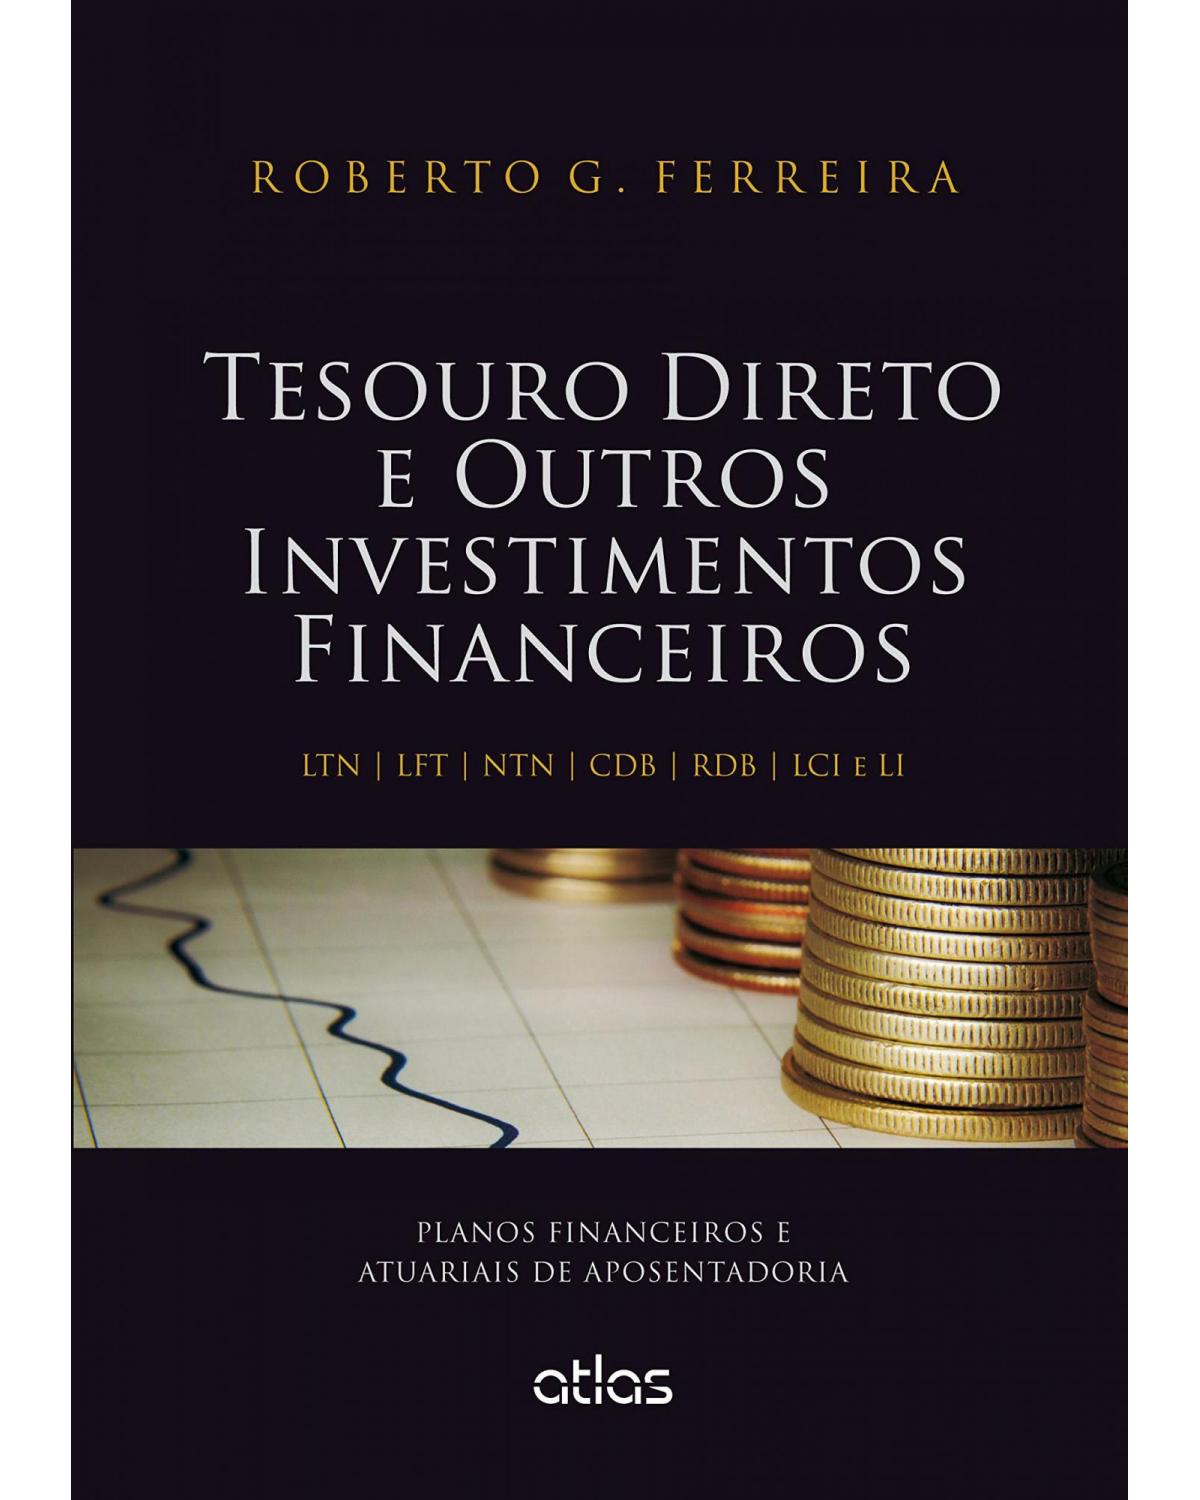 Tesouro direto e outros investimentos financeiros - Planos financeiros e atuariais de aposentadoria - 1ª Edição | 2015